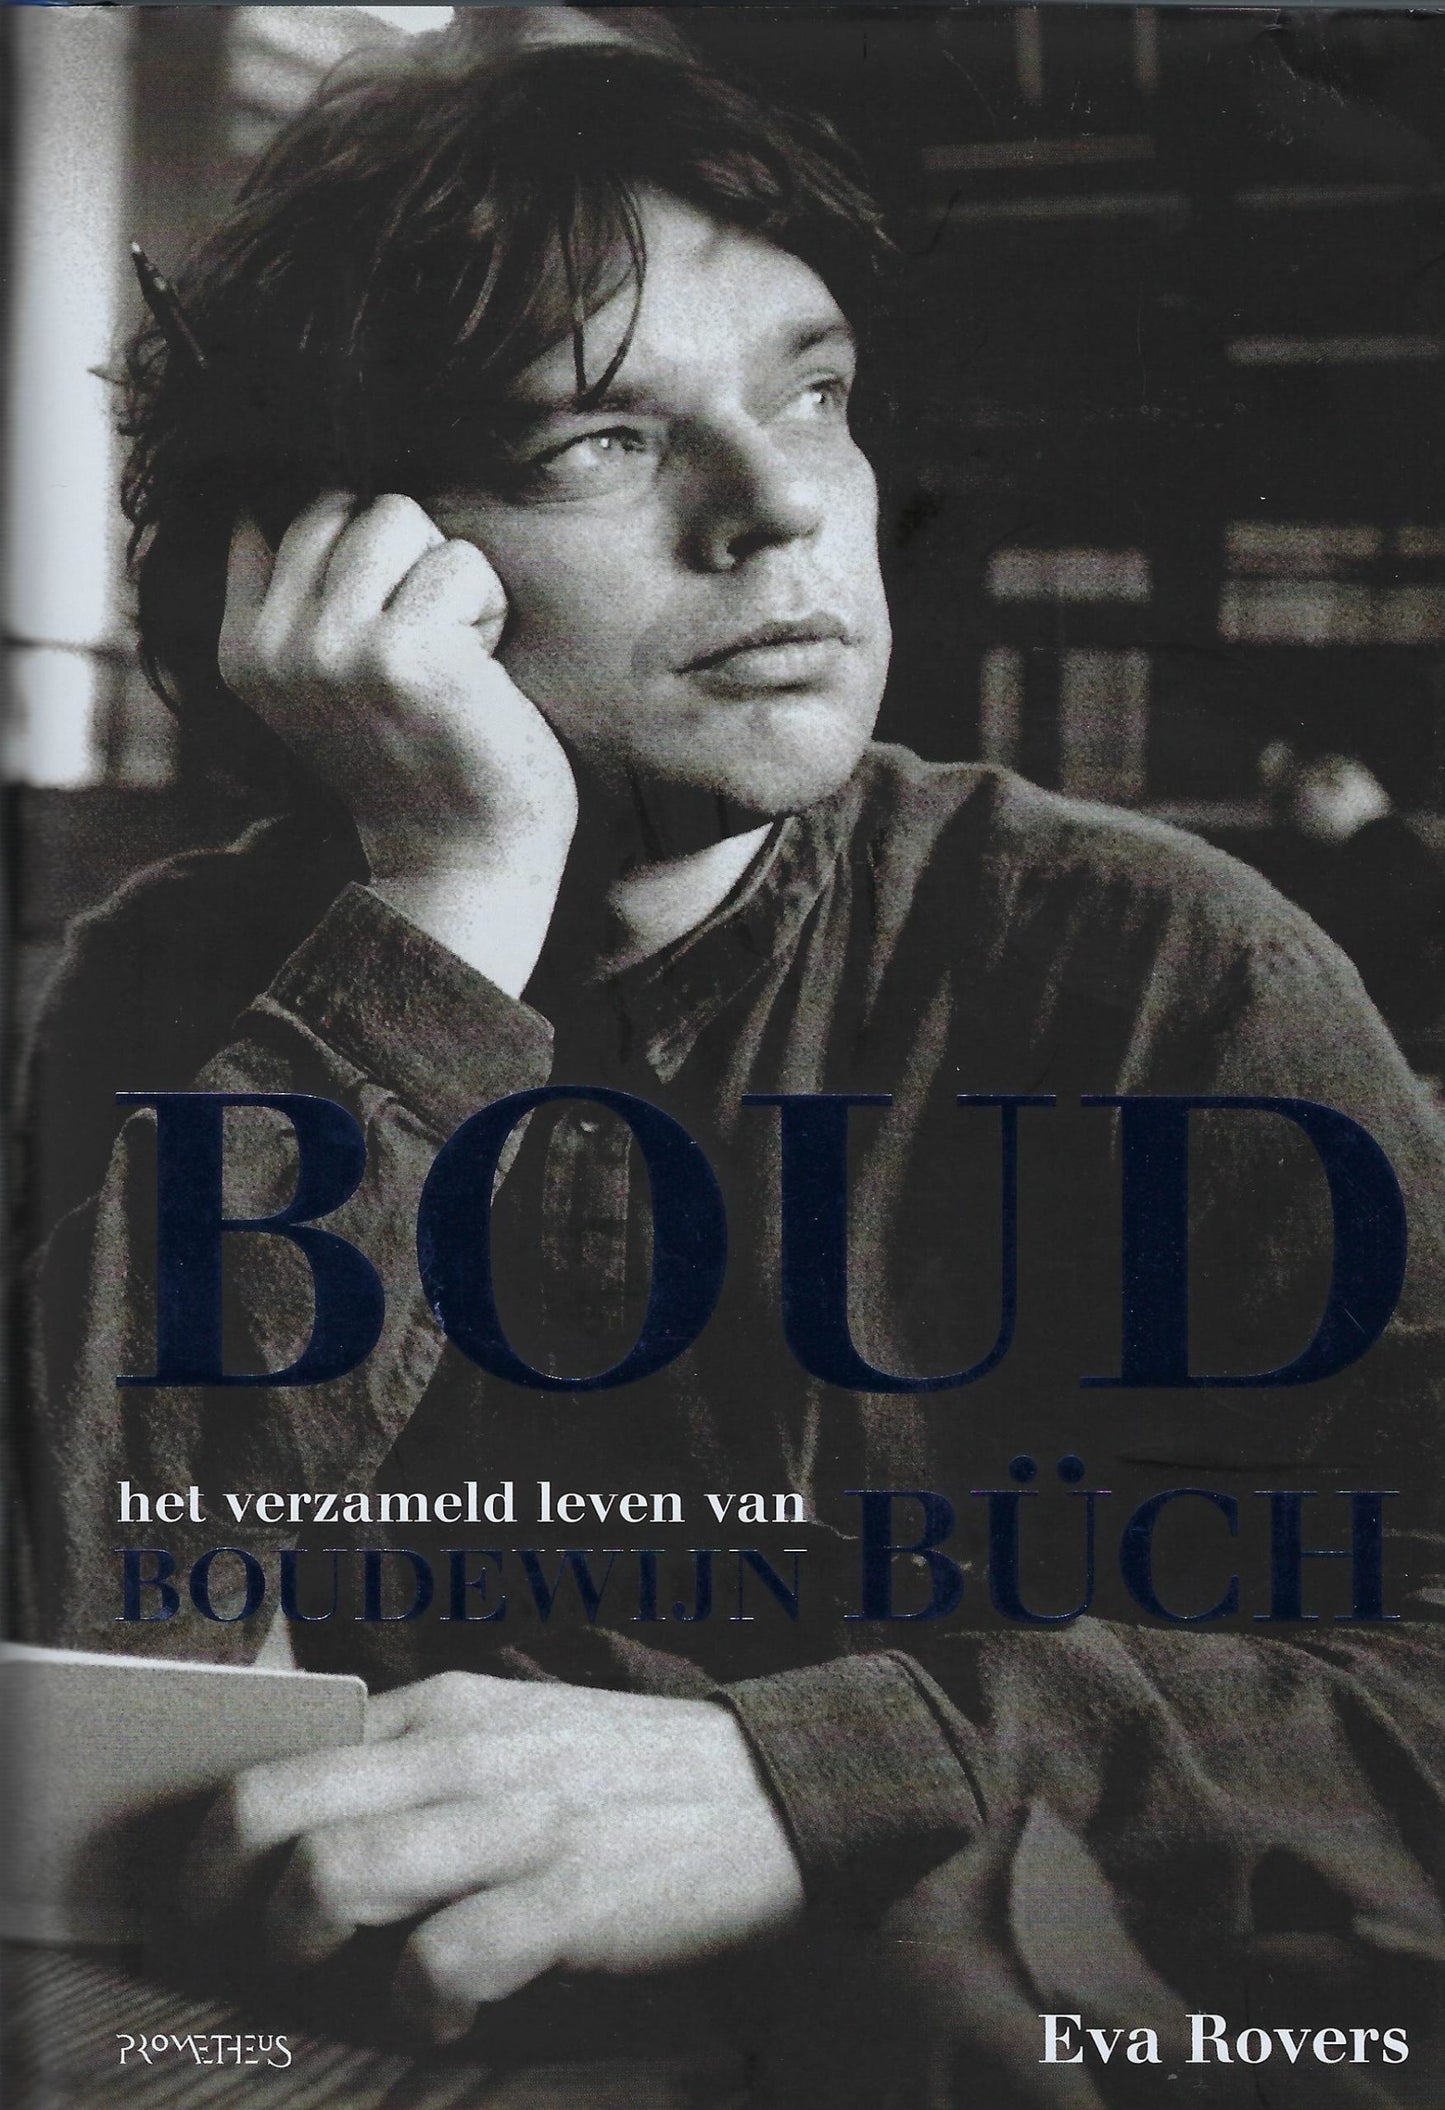 Boud - Het verzameld leven van Boudewijn Buch (1948-2002)